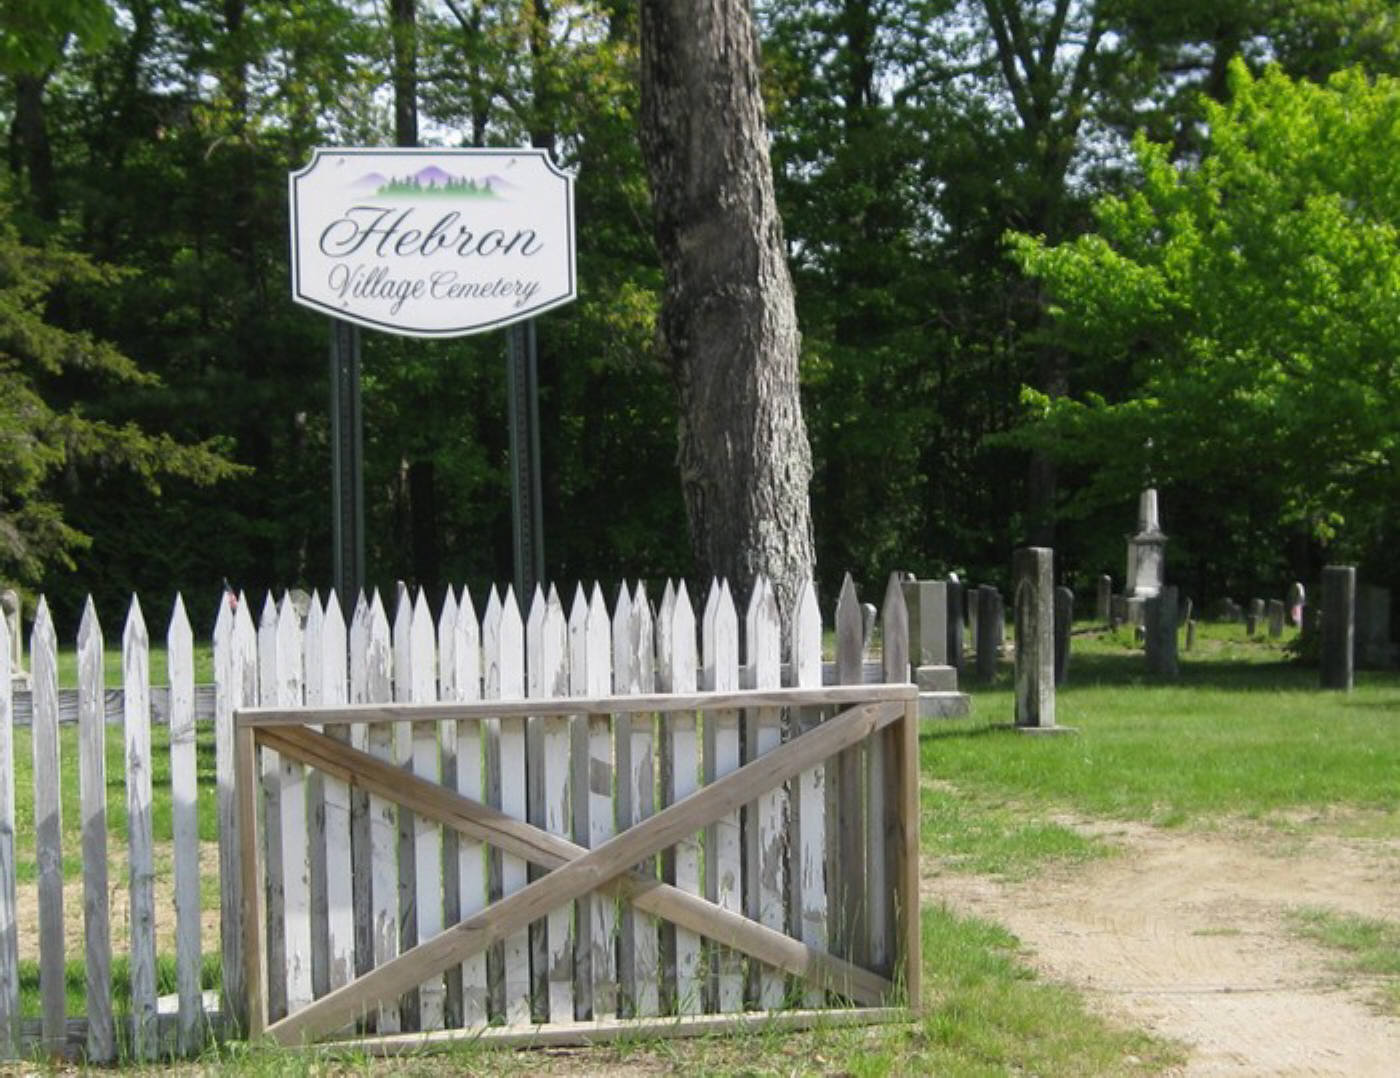 Hebron Village Cemetery